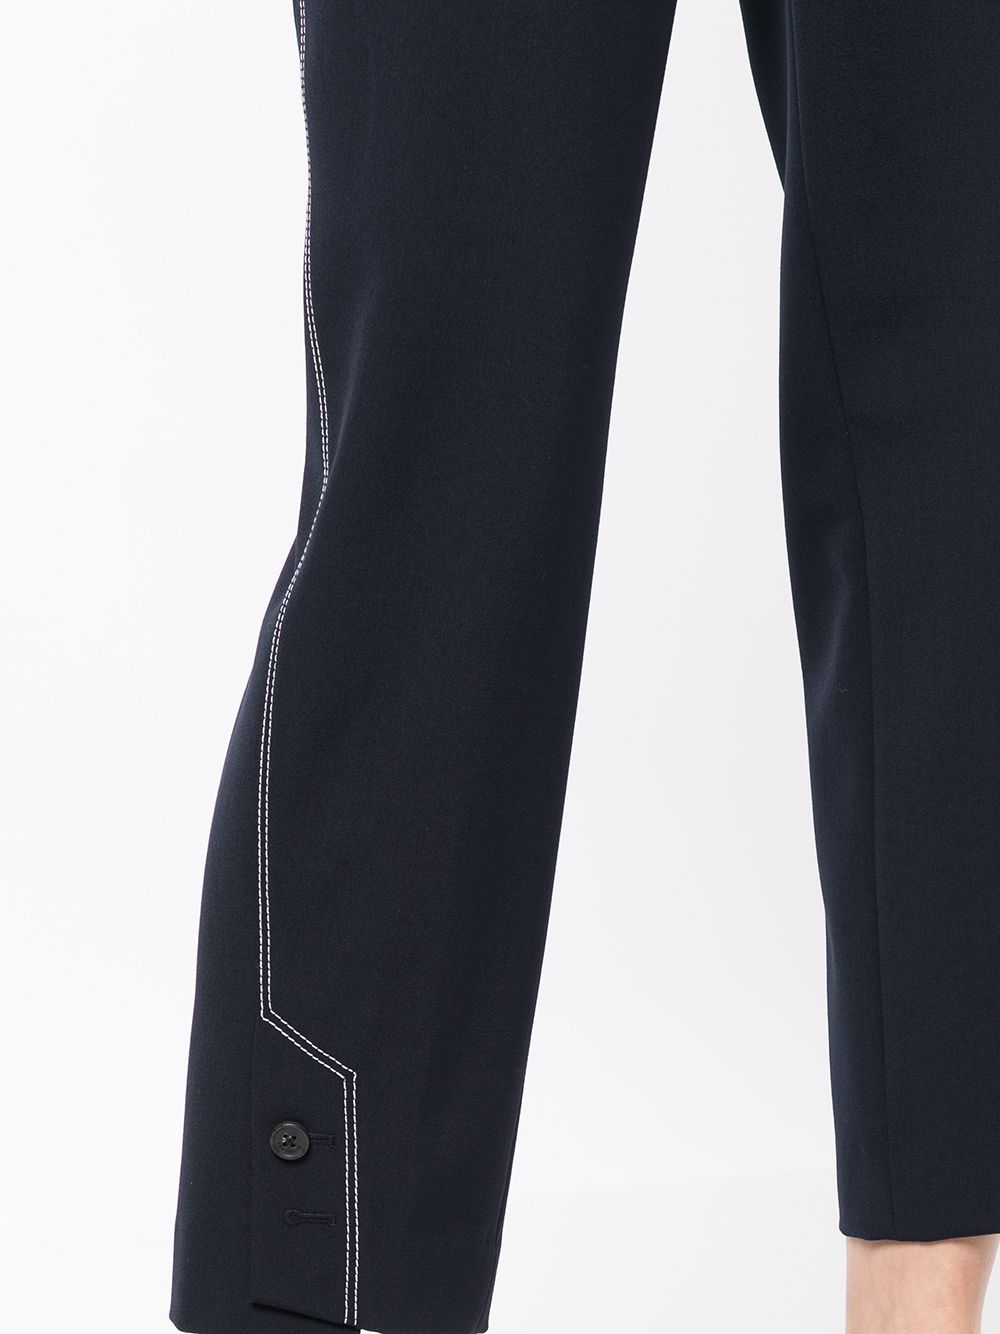 фото Portspure строгие брюки с декоративной строчкой